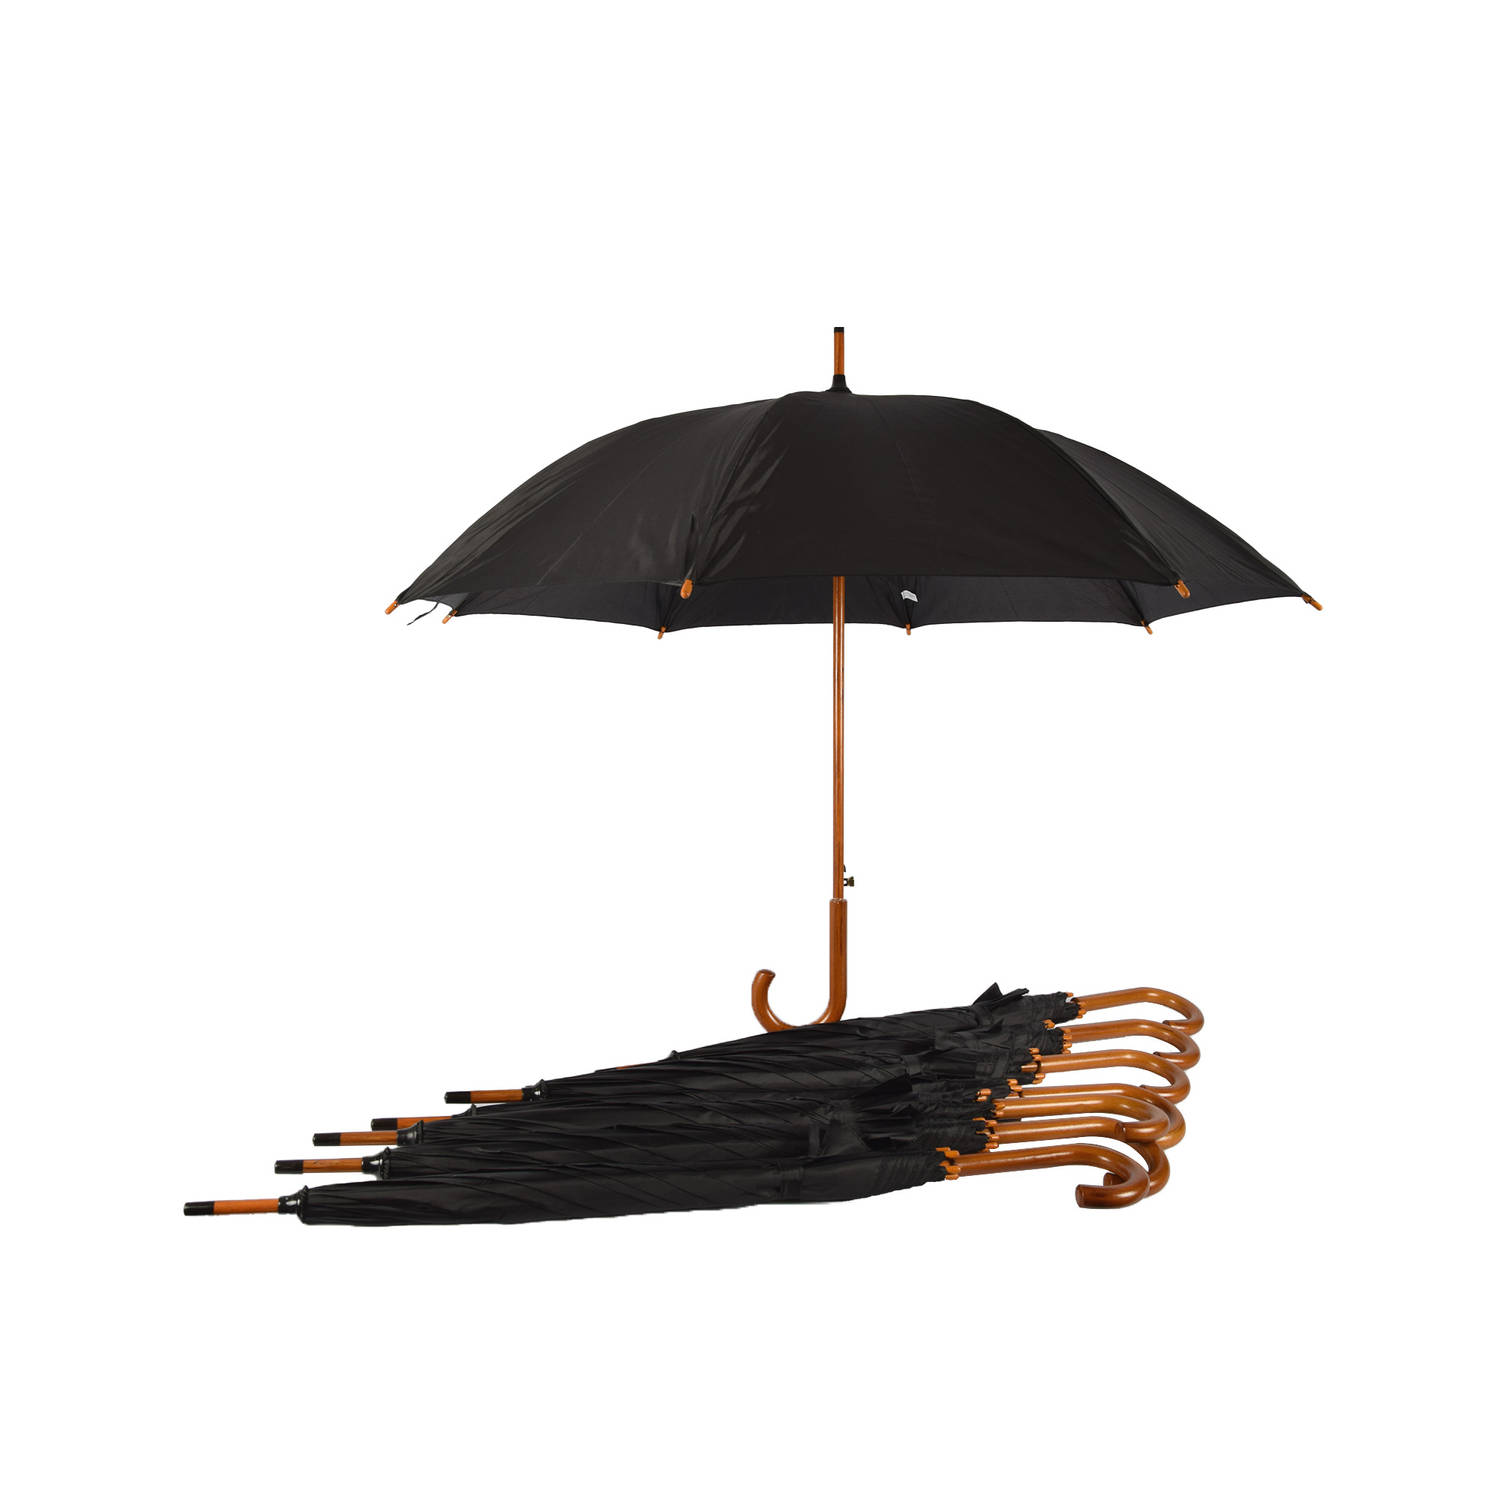 Set van 8 Zwarte Automatische Paraplu's voor Volwassenen met Houten Handvat - Aluminium Frame - Polyester Doek - 102cm Diameter – Groot Formaat